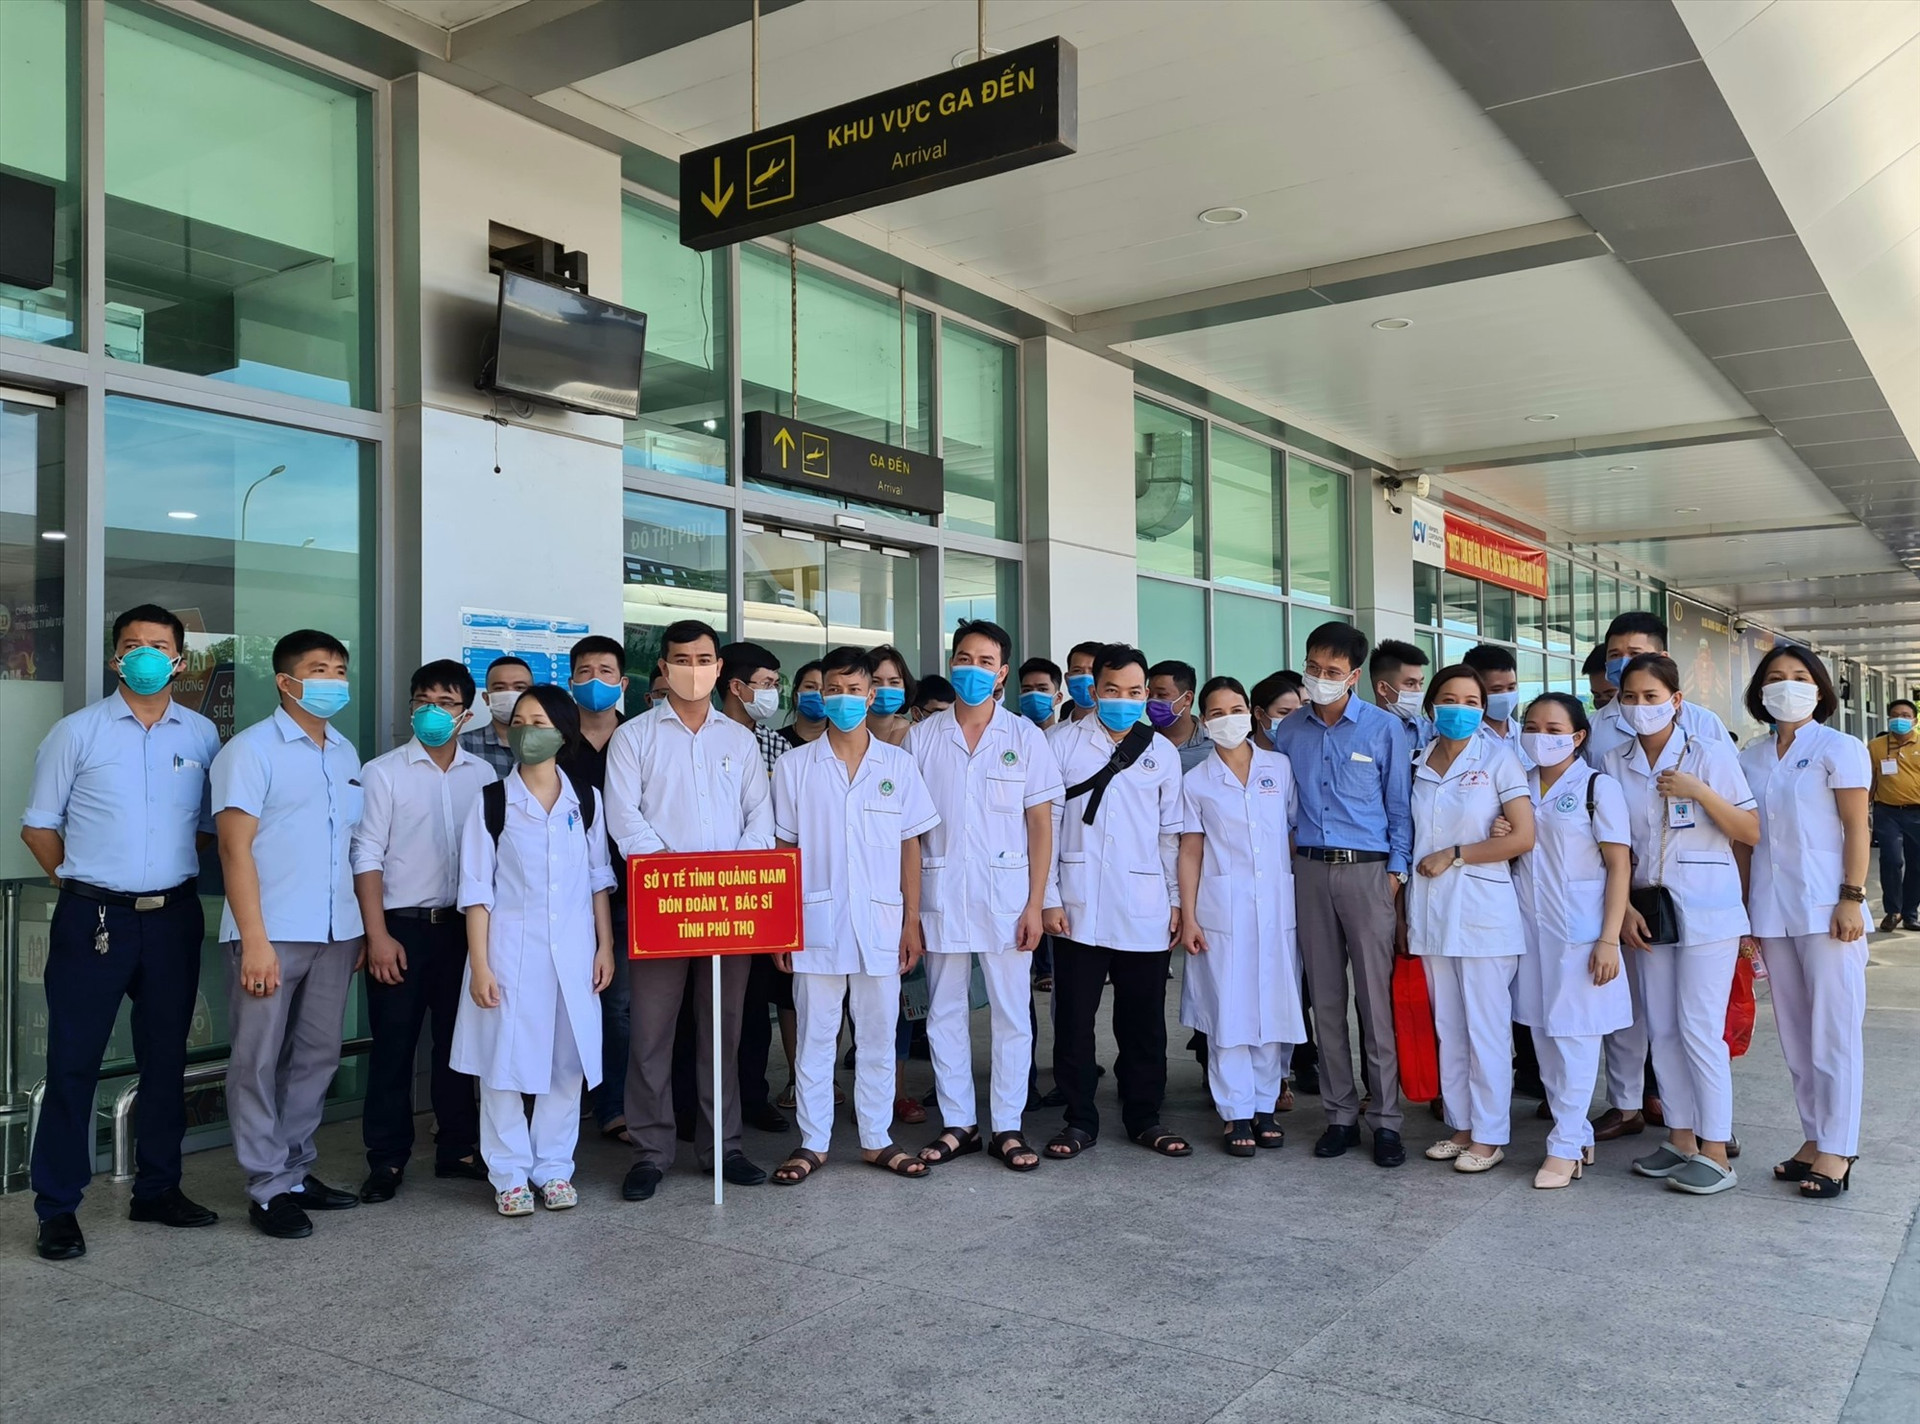 Đoàn y bác sĩ tình nguyện của tỉnh Phú Thọ chi viện cho tuyến đầu Quảng Nam. Ảnh: T.N